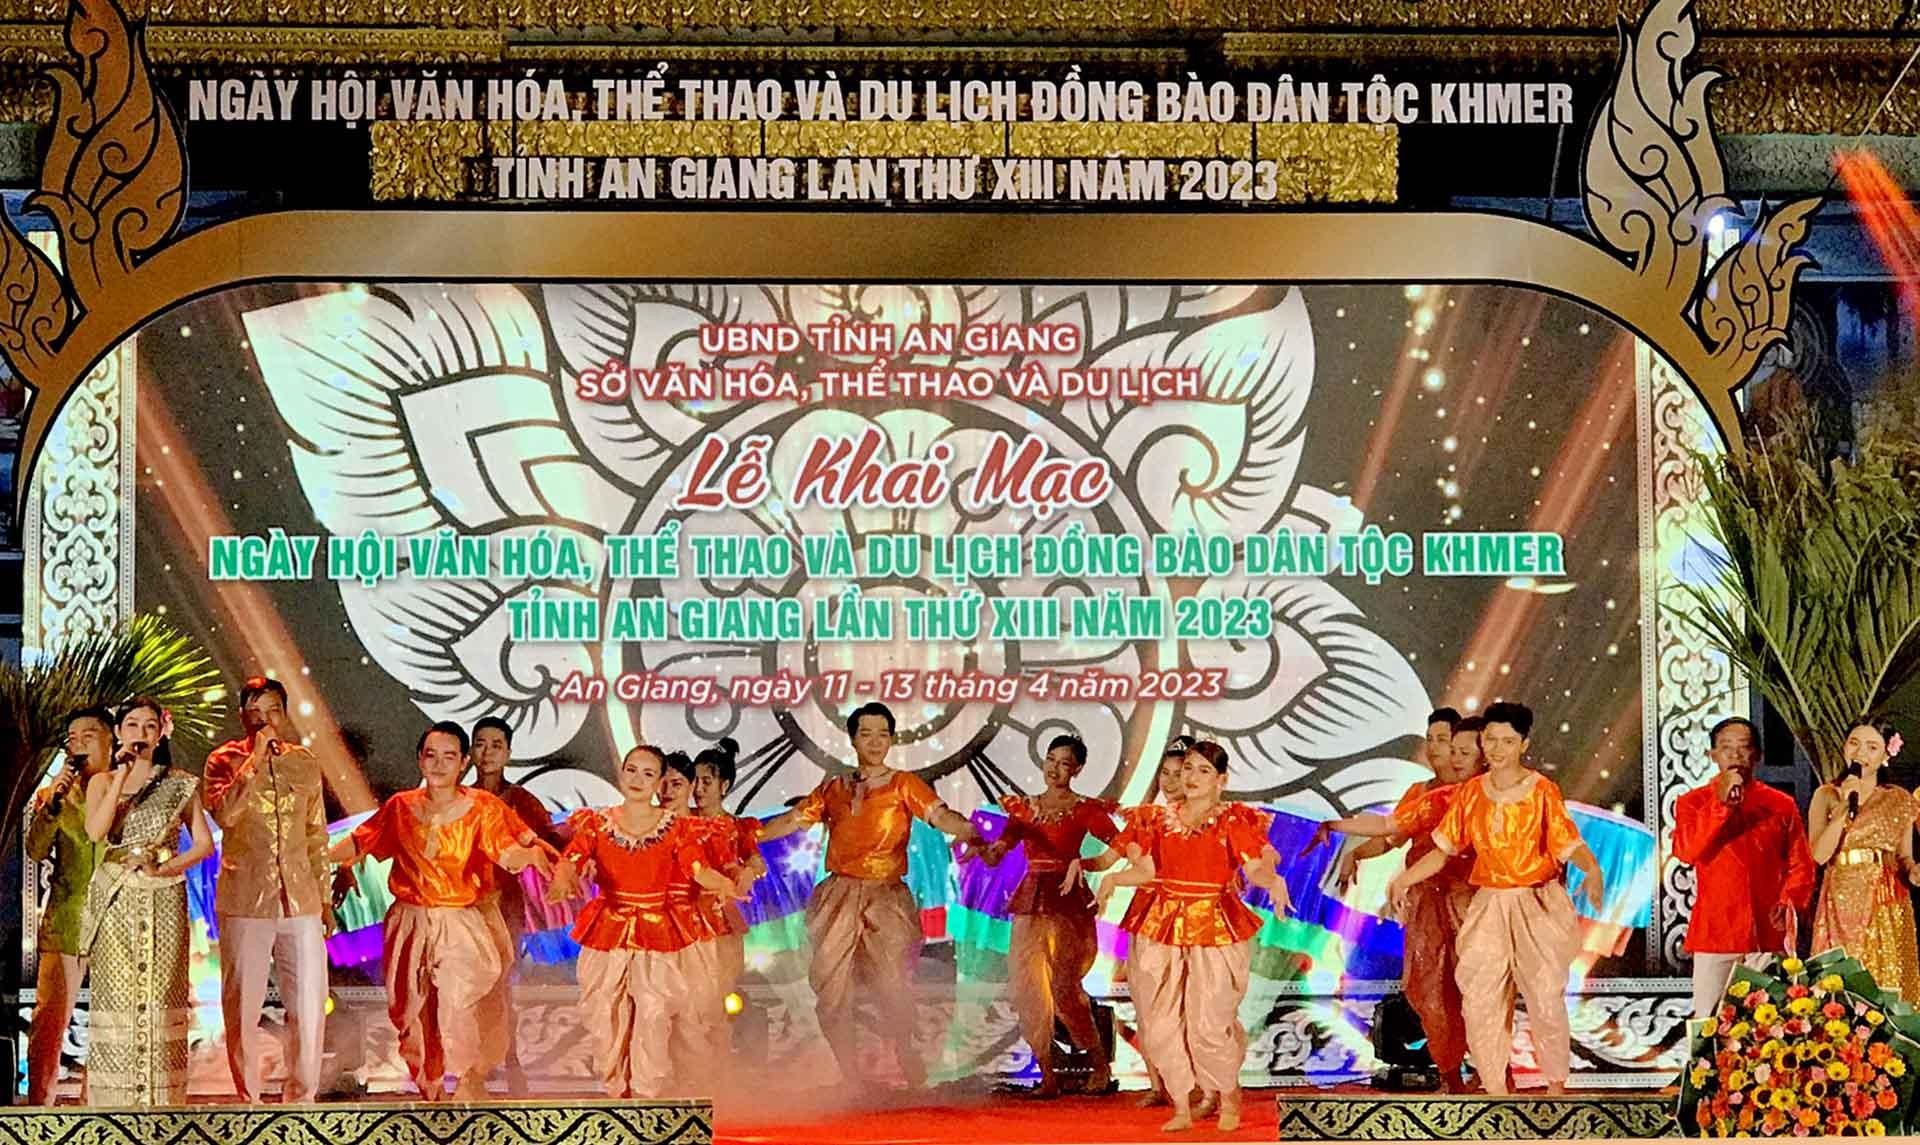 Tiết mục múa đậm đà bản sắc dân tộc khai màn ngày hội văn hoá, thể thao và du lịch đồng bào dân tộc Khmer tỉnh An Giang lần thứ XIII năm 2023. (Ảnh: Chiến Khu)